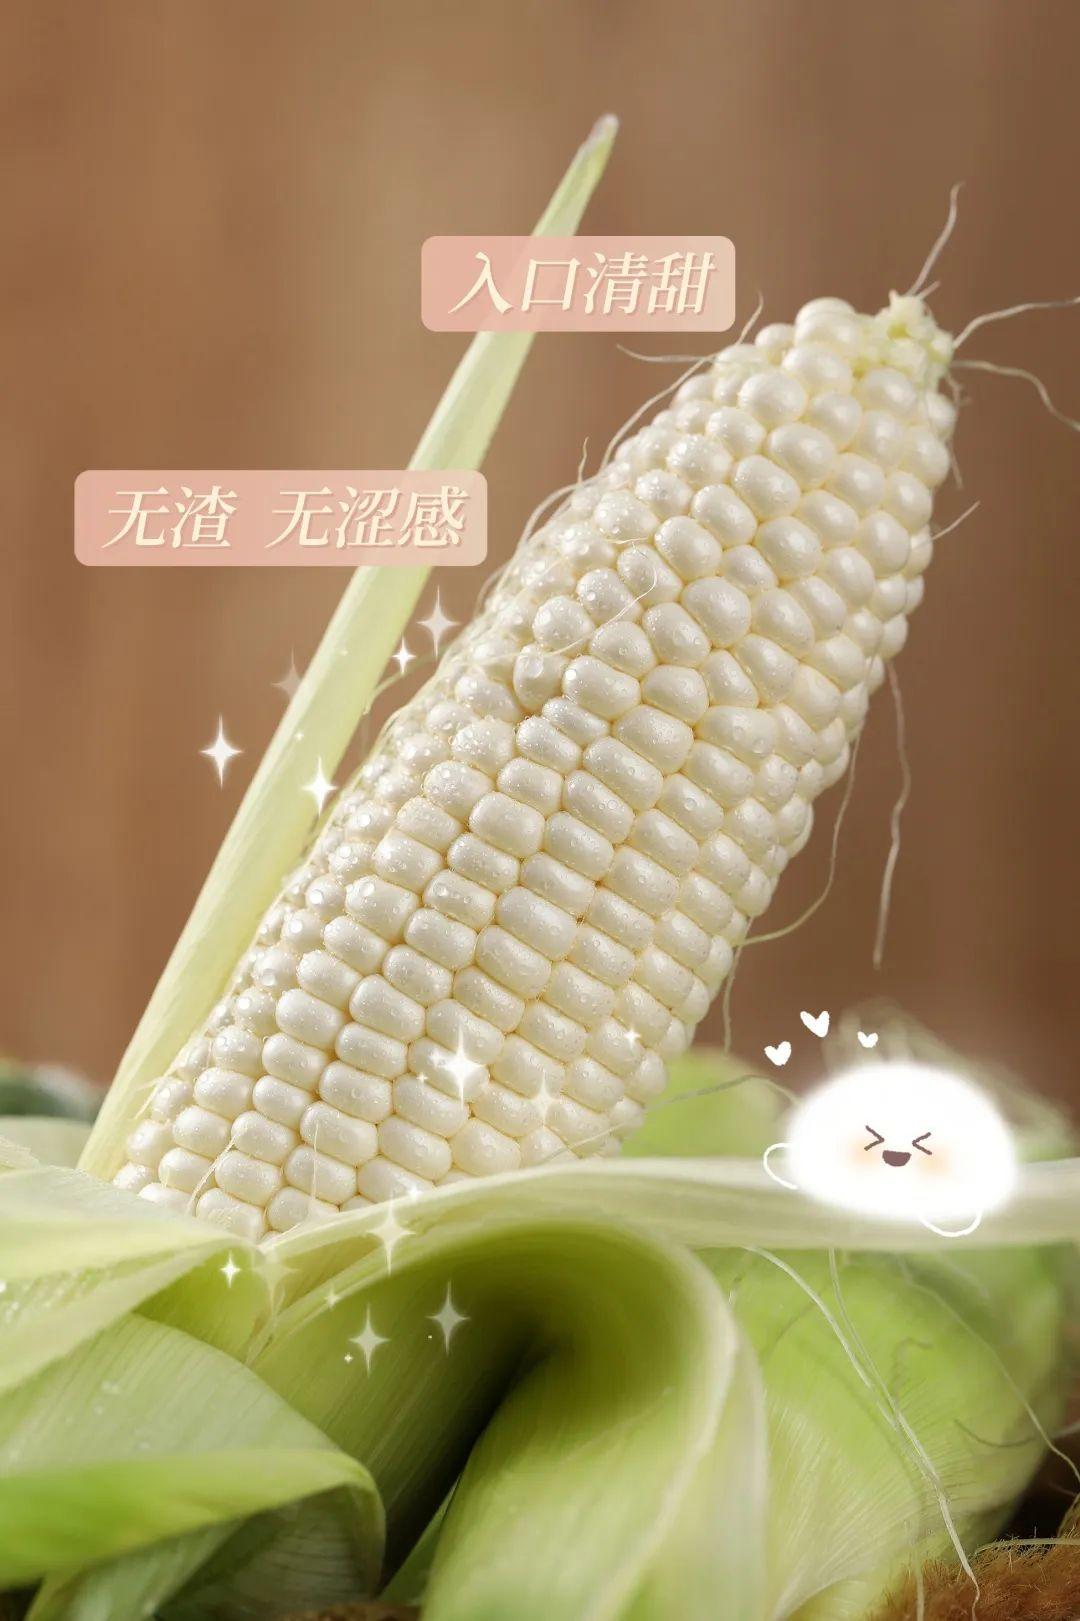 奶香玉米的做法_奶香玉米怎么做_奶香玉米的家常做法_隐耳丰的博客【心食谱】